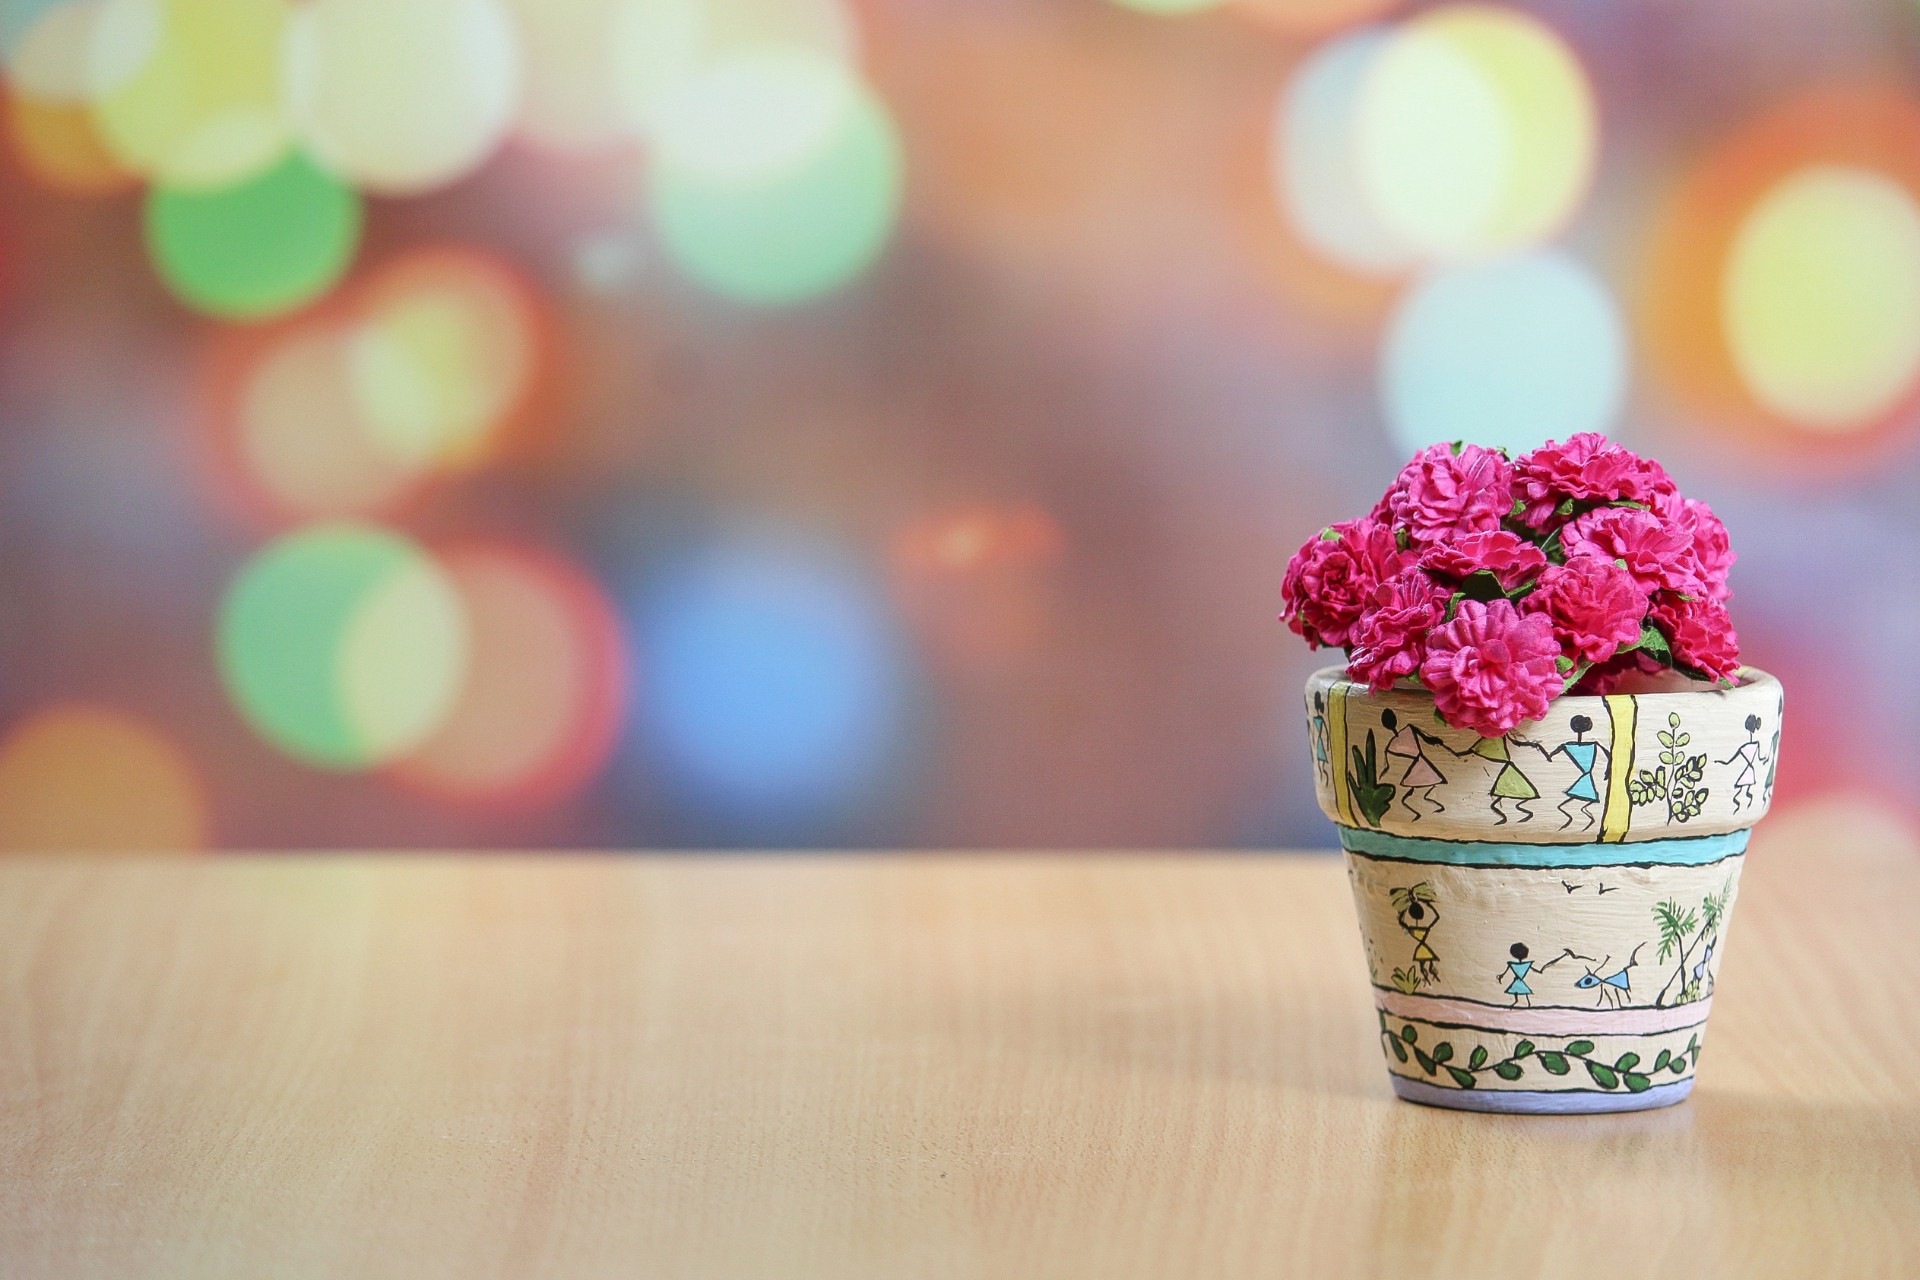 Claves para decorar la casa con flores artificiales - Foto 1